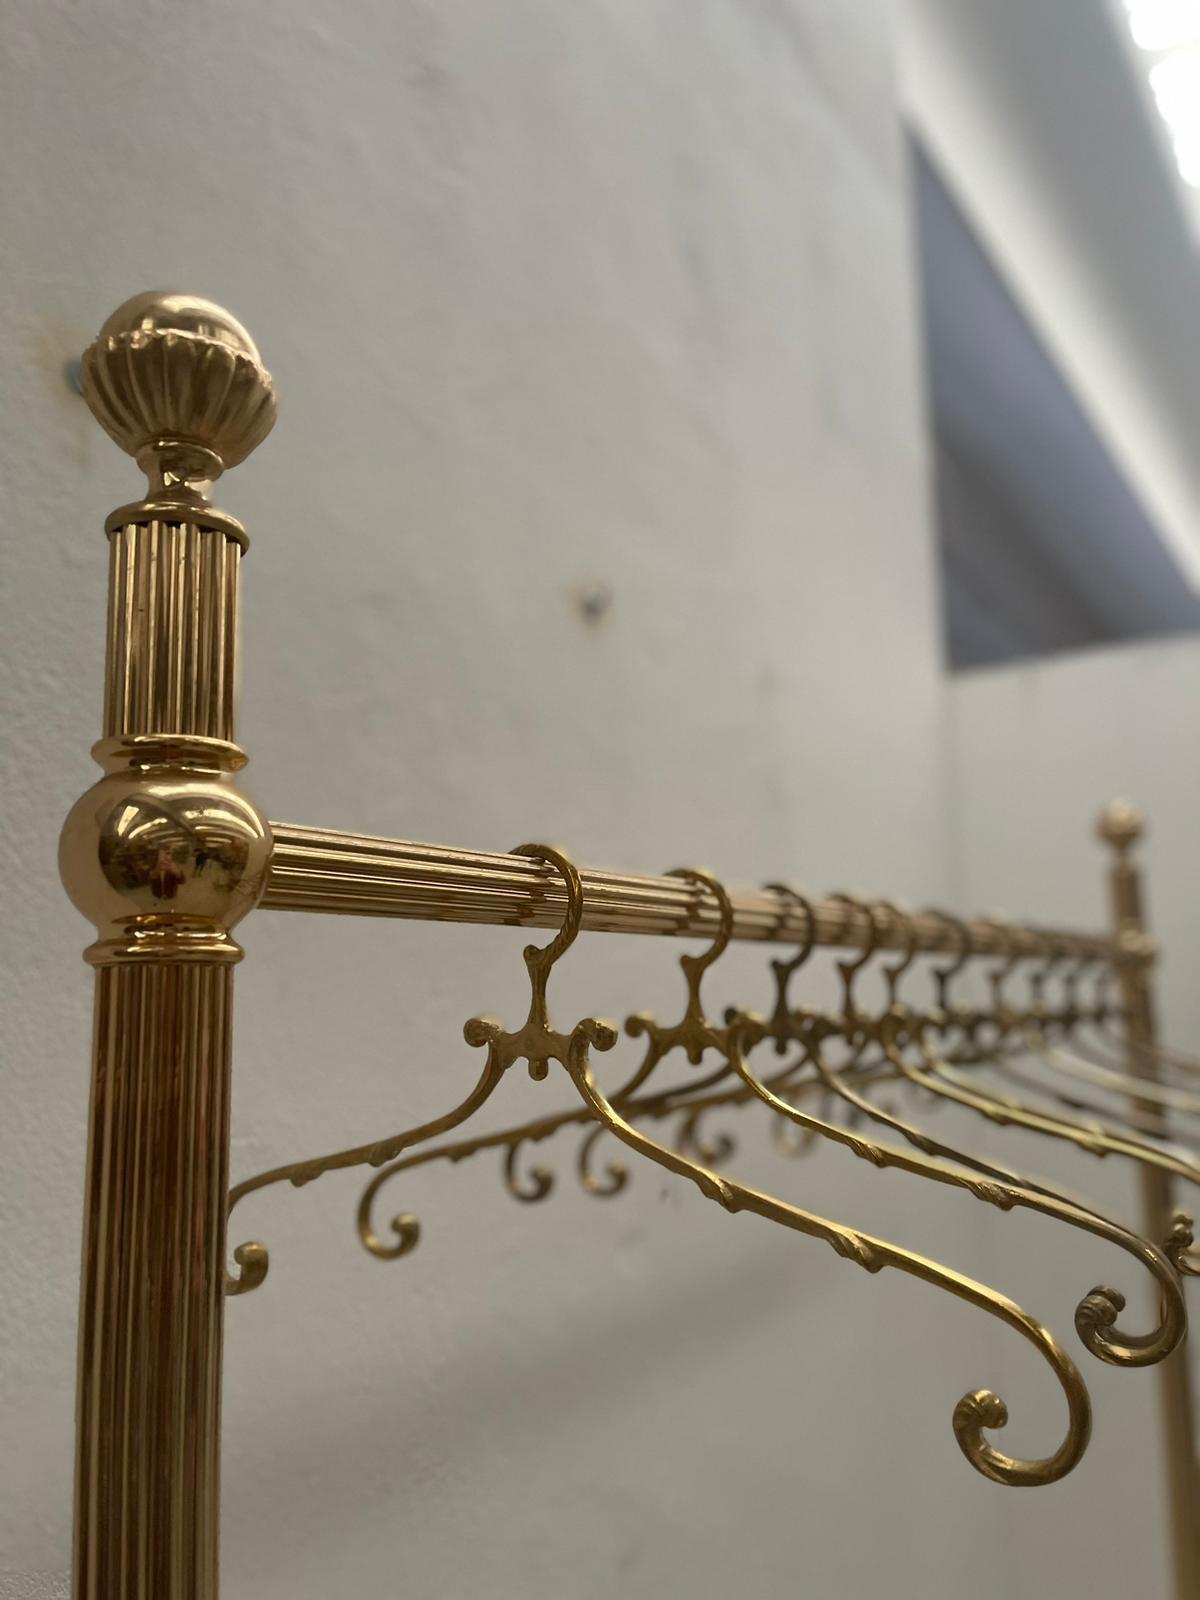 Appendiabiti in ottone in ottime condizioni, mai usato con 10 accessori. Realizzato negli anni '60 del XX secolo. Il potenziale del pezzo è rinchiuso nella colatura in oro zecchino.

Private Collection Di Domenico Rugiano. 